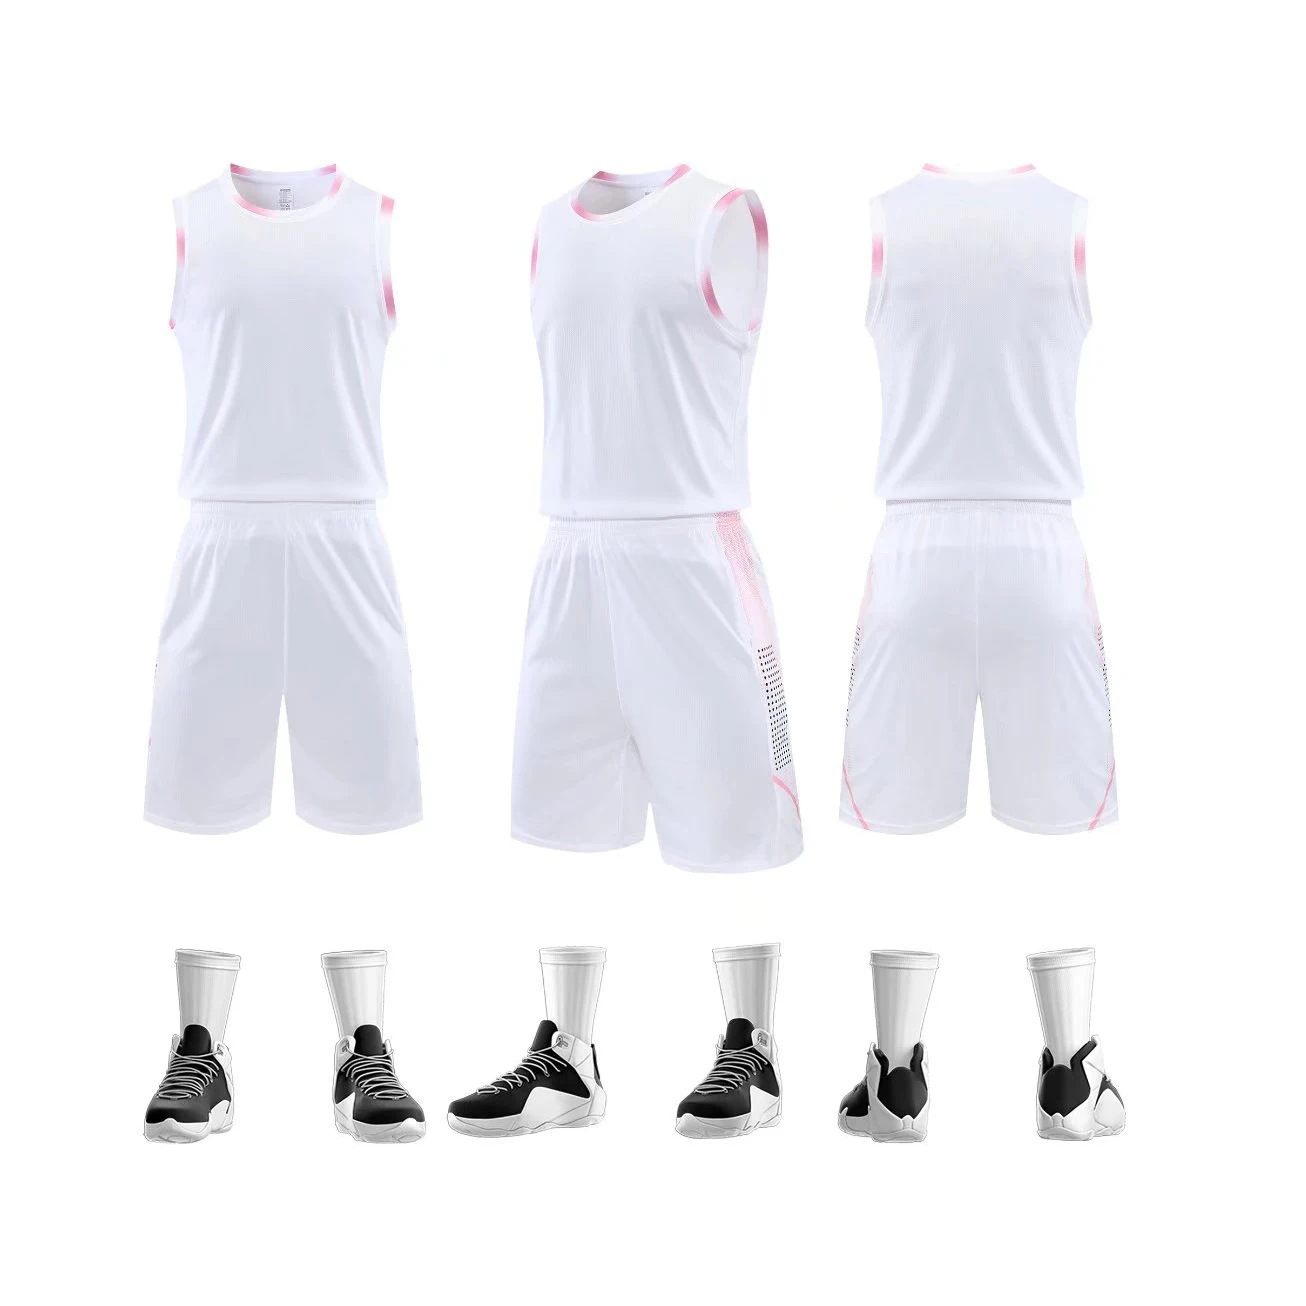 Cheap Factory 2022 Best Basketball Jersey Design Personalized Breathable  Basketball Jersey - Buy Best Basketball Jersey Design,Personalized  Basketball